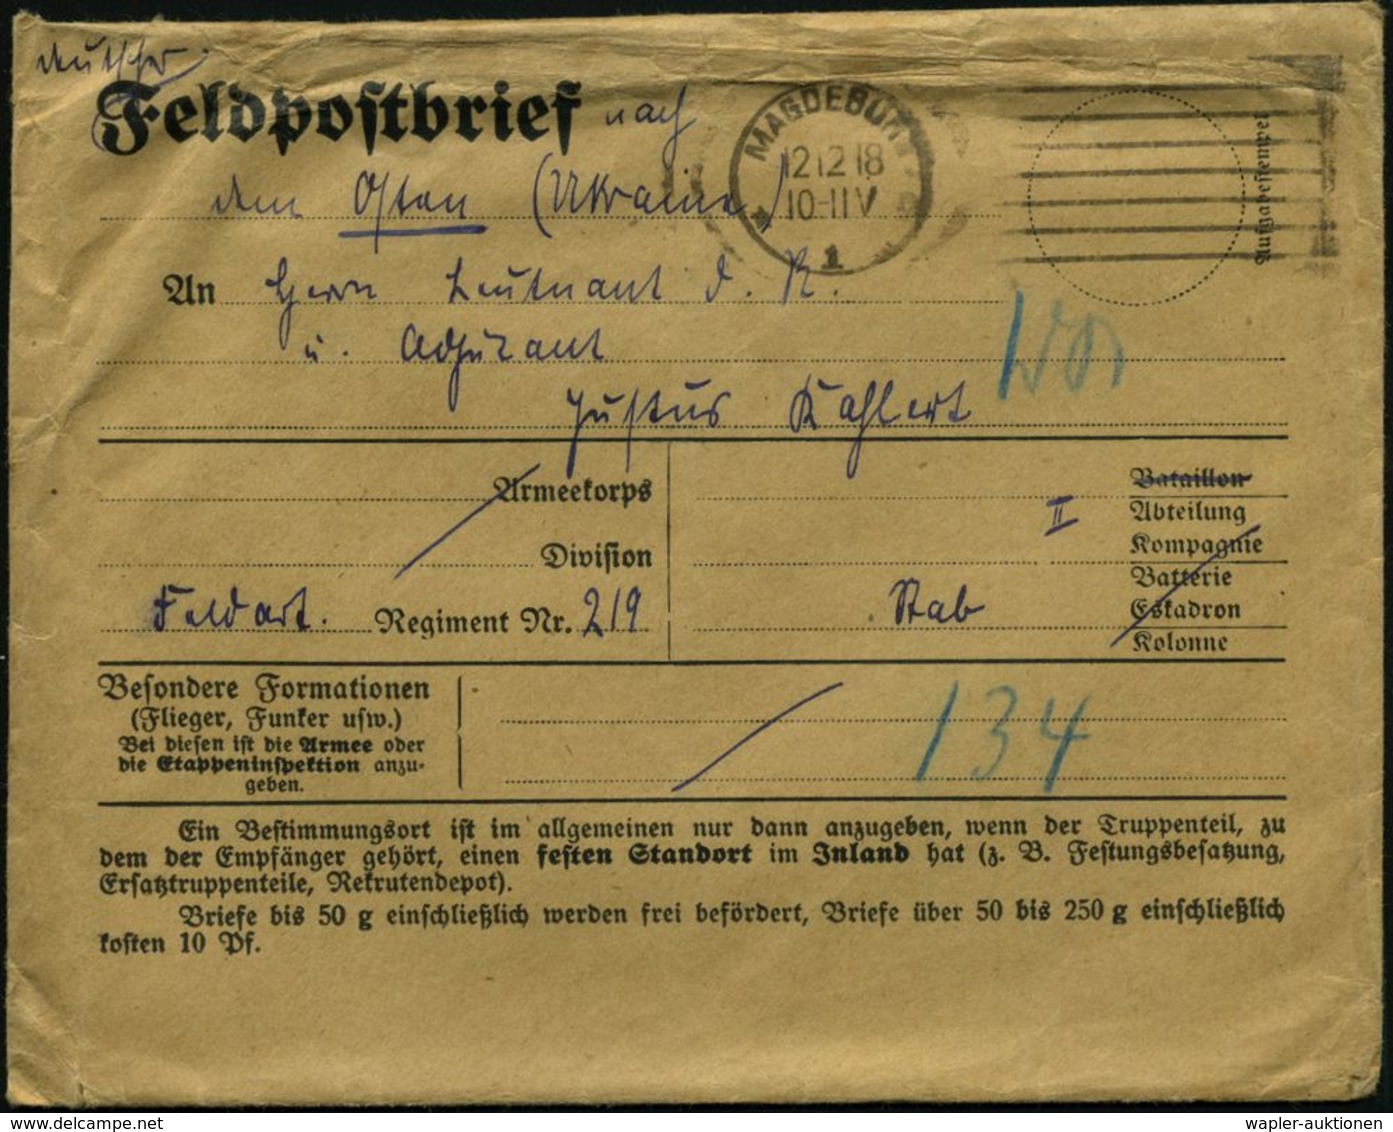 MAGDEBURG/ *1o 1918 (12.12.) MaStrichSt. Auf Spätem Feldpost-Vordr.-Bf. + Inhalt: 2 Handgemalte Weihnachts-Briefumschläg - Prima Guerra Mondiale